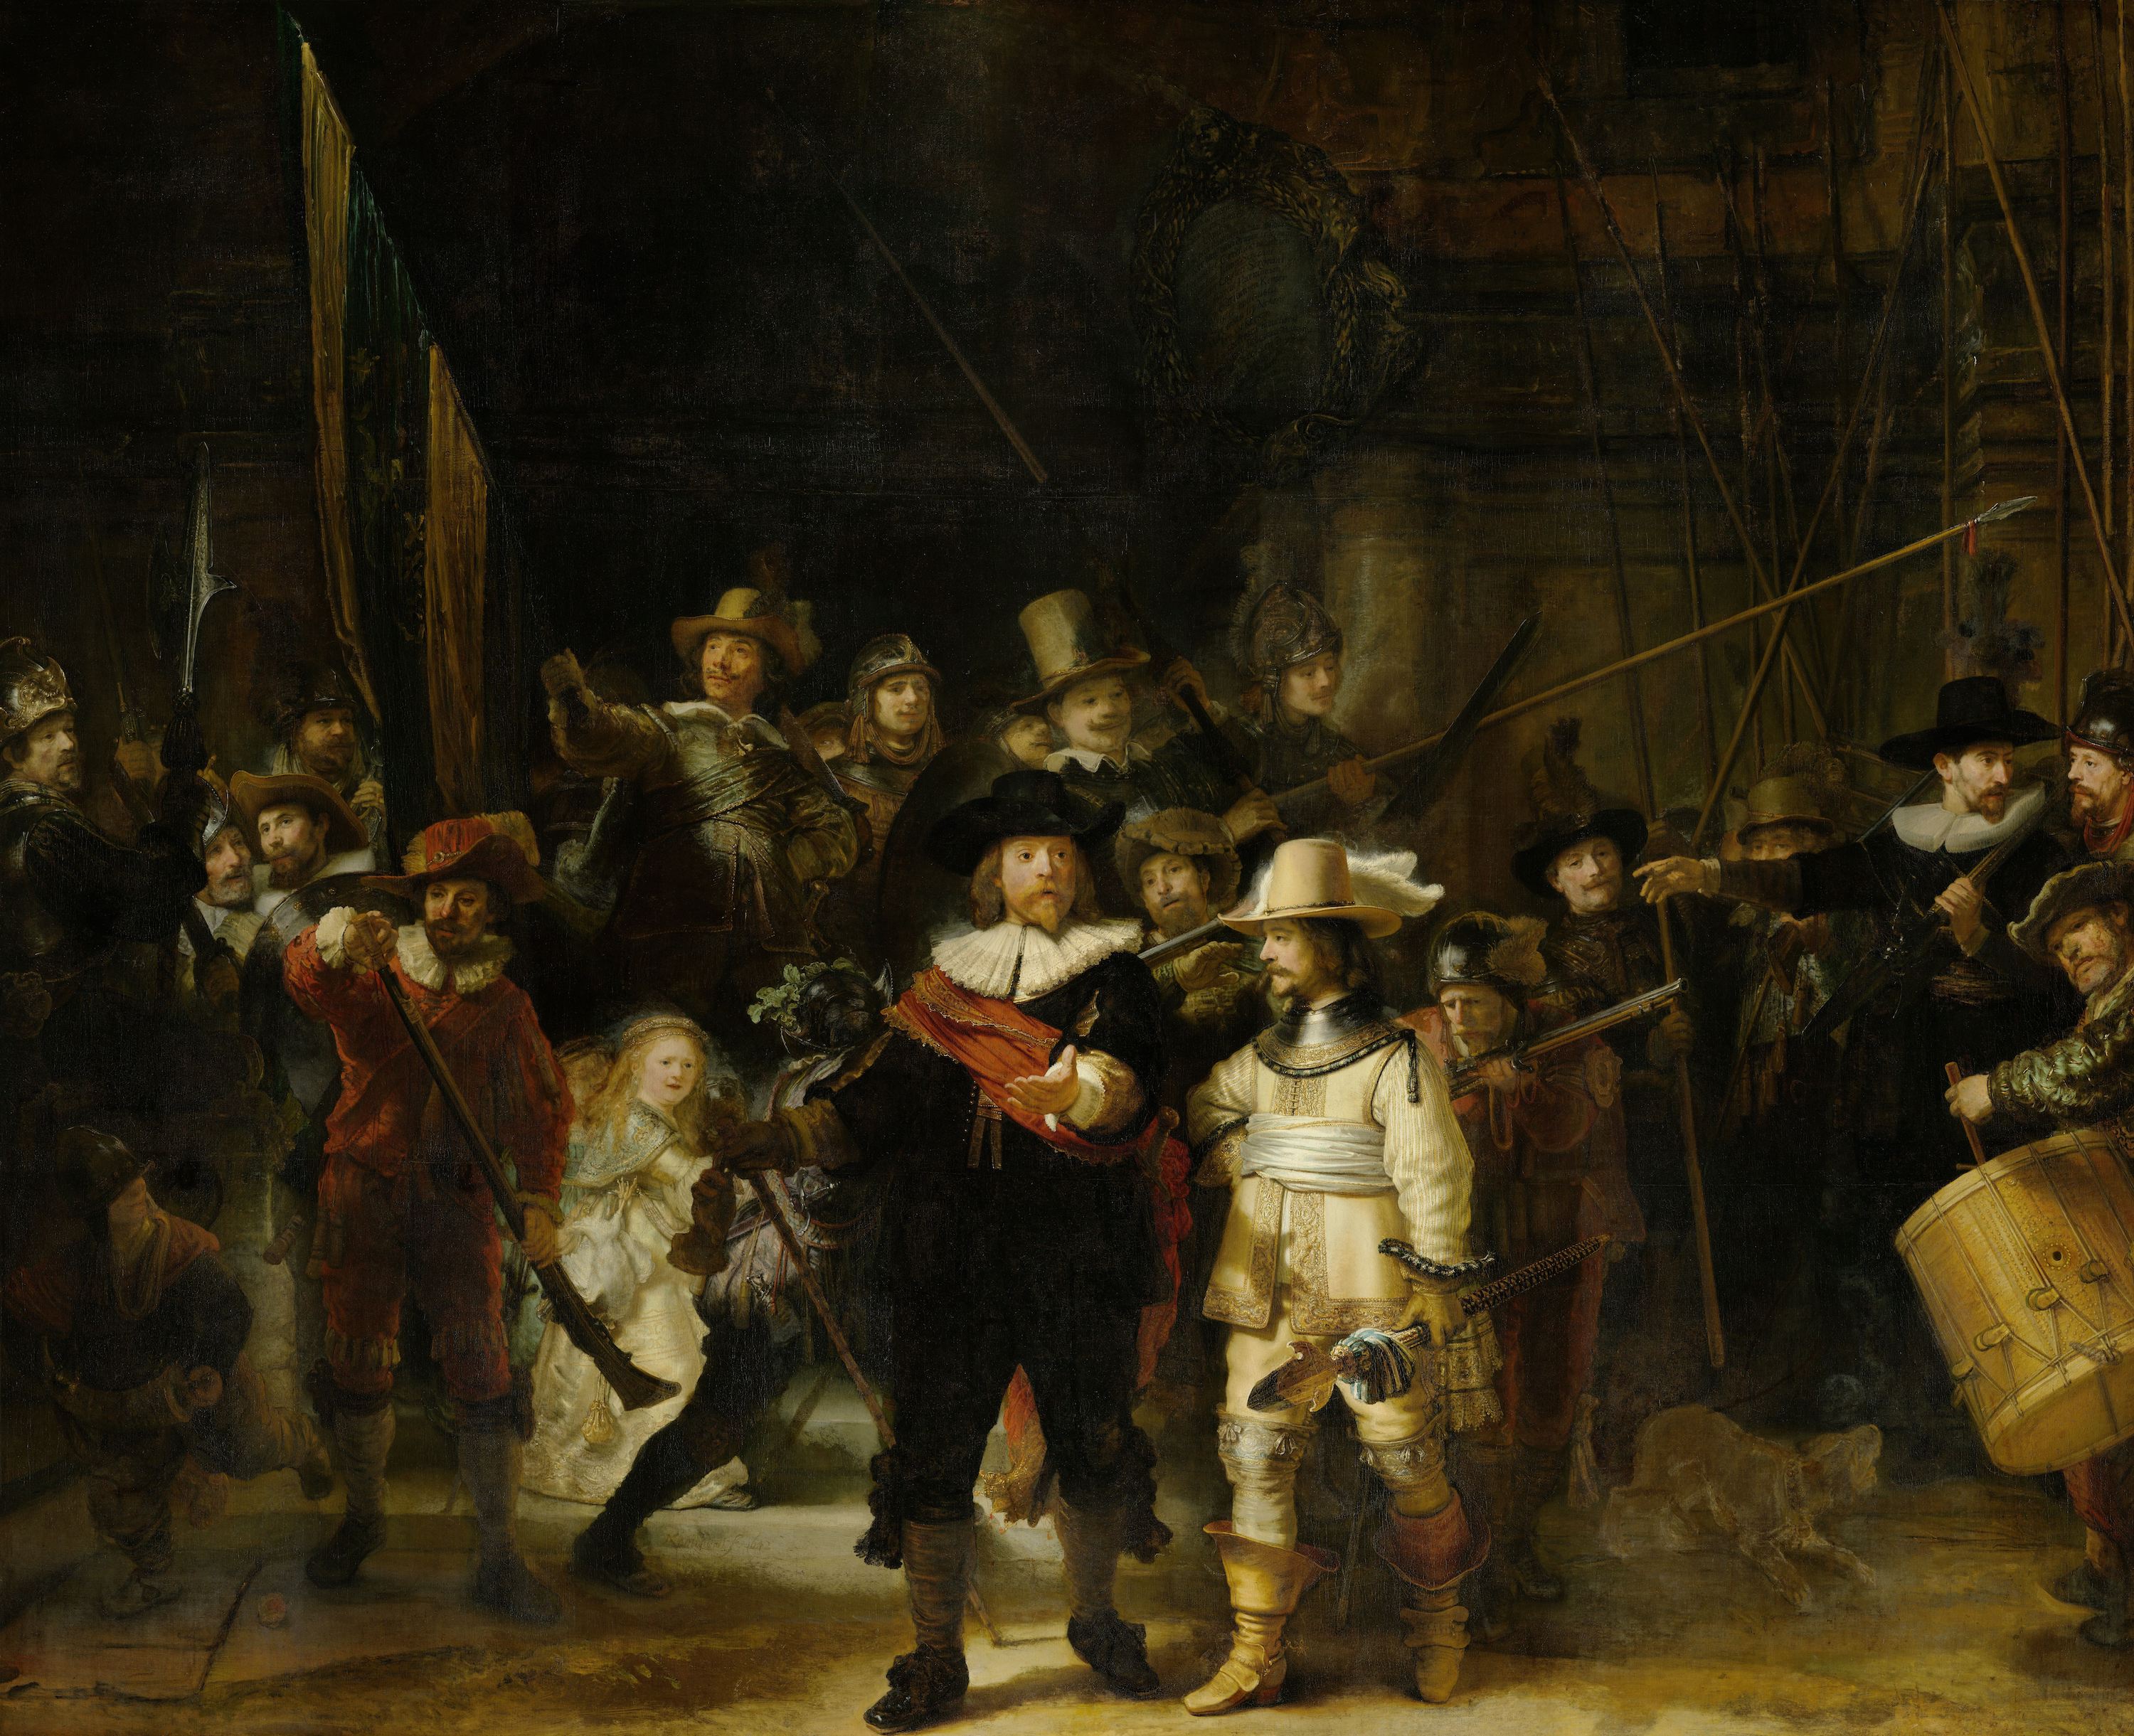 De nachtwacht by Rembrandt Van Rijn - 1642 - 363 × 437 cm Rijksmuseum